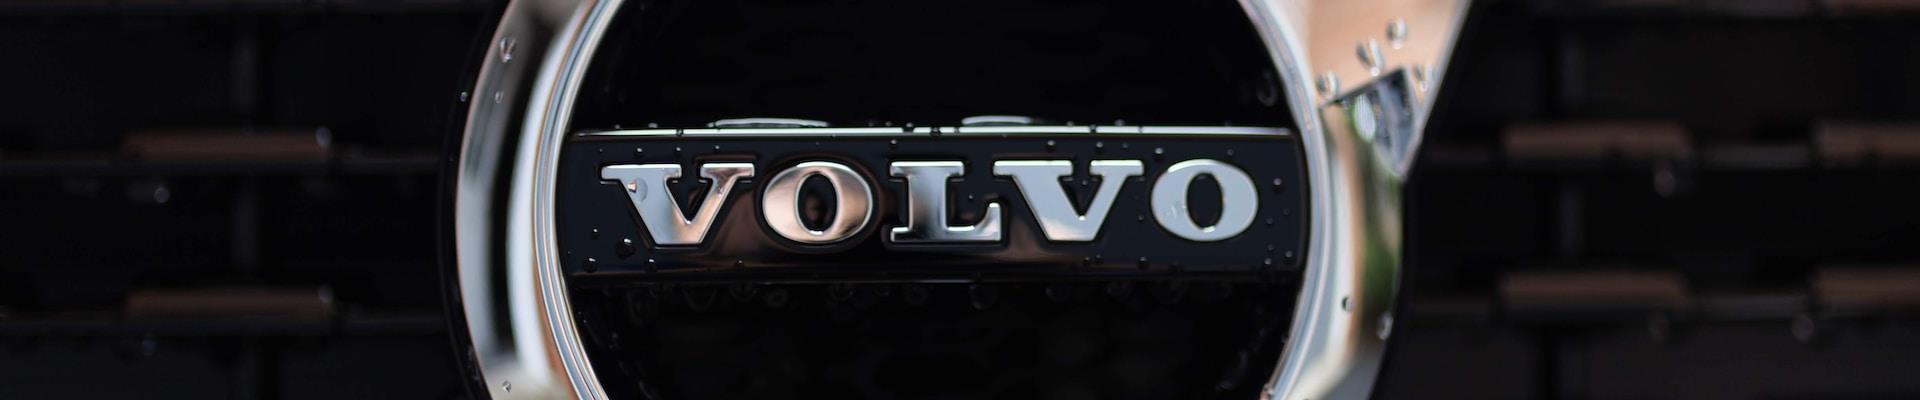 “Sustentabilidade nos faz brilhar” é o que diz a ação da Volvo para o final de ano